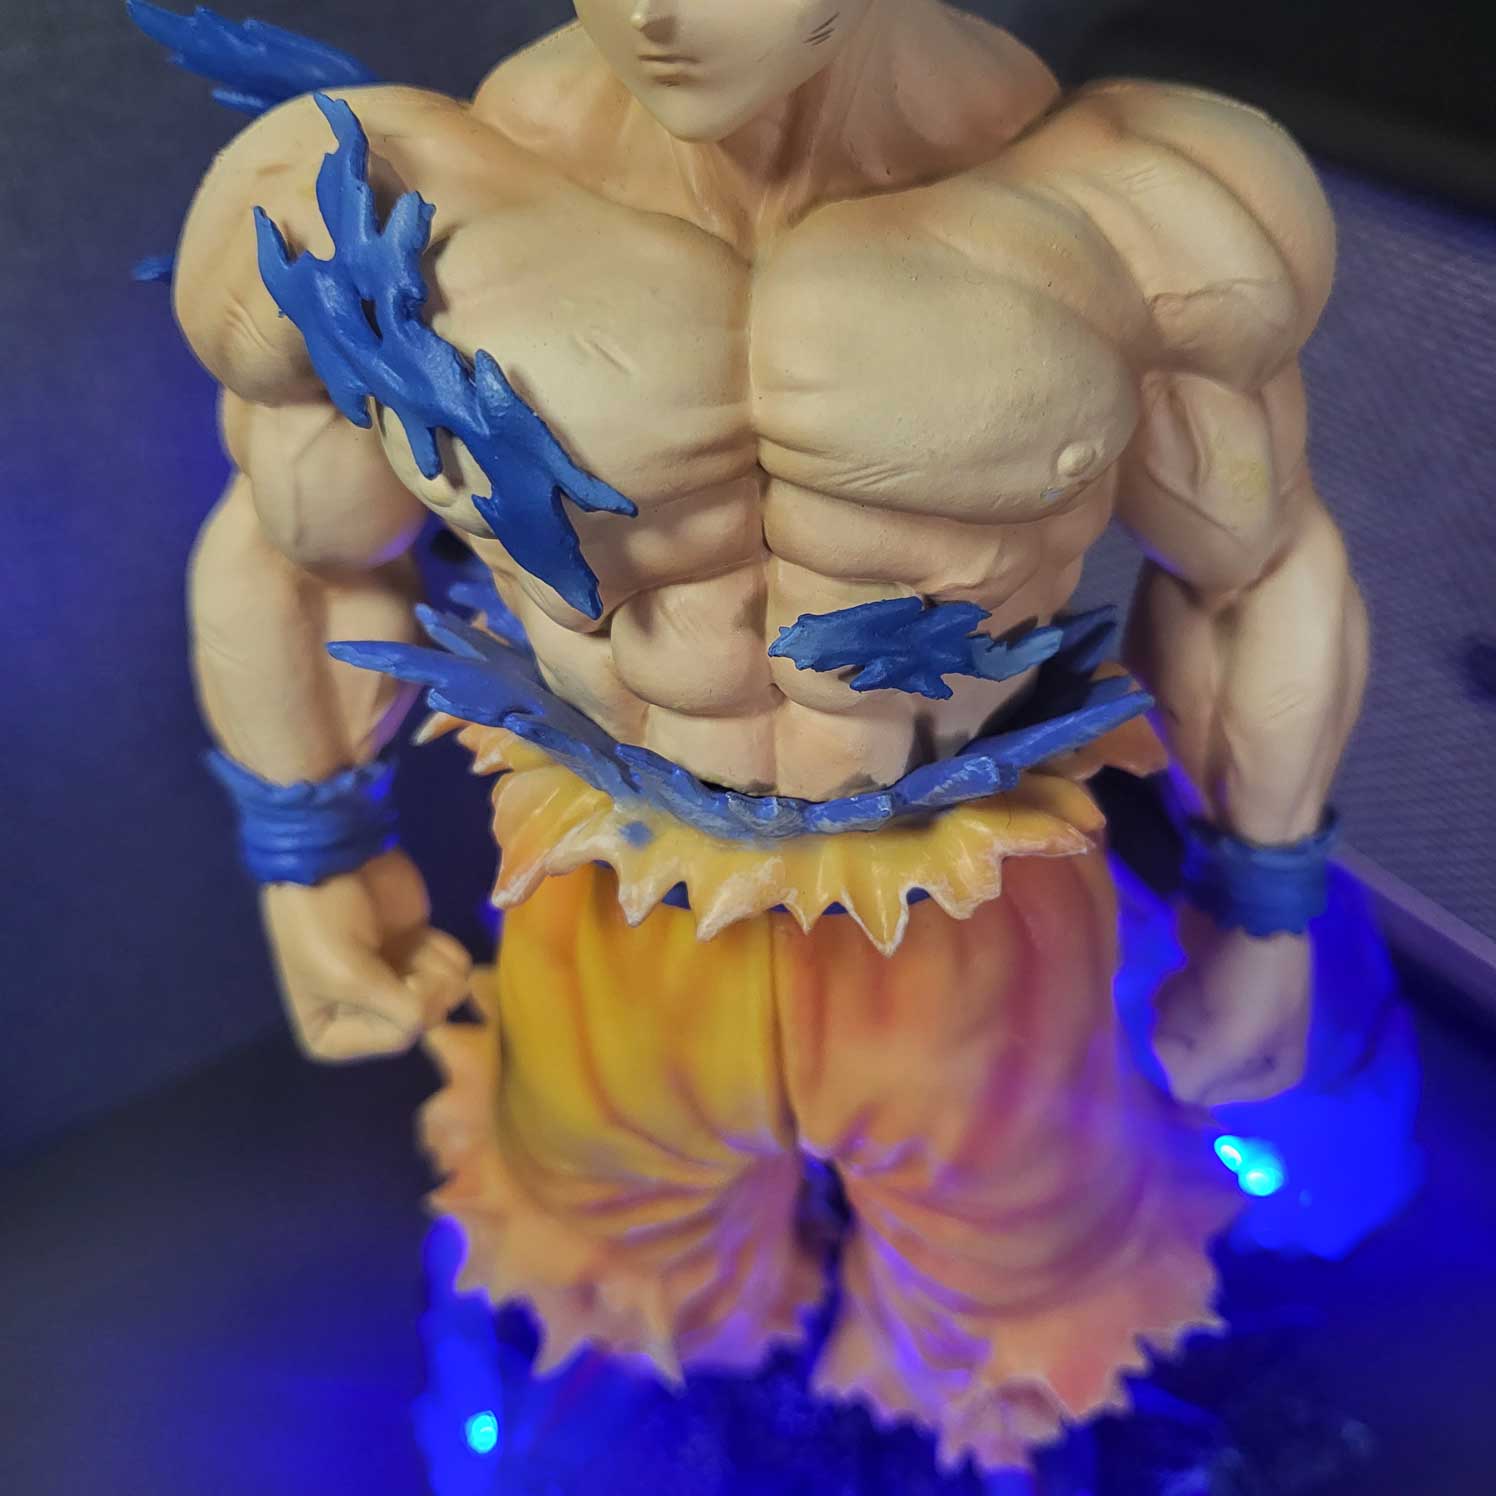 Mô hình Son Goku vô cực 32 cm có LED - Dragon Ball